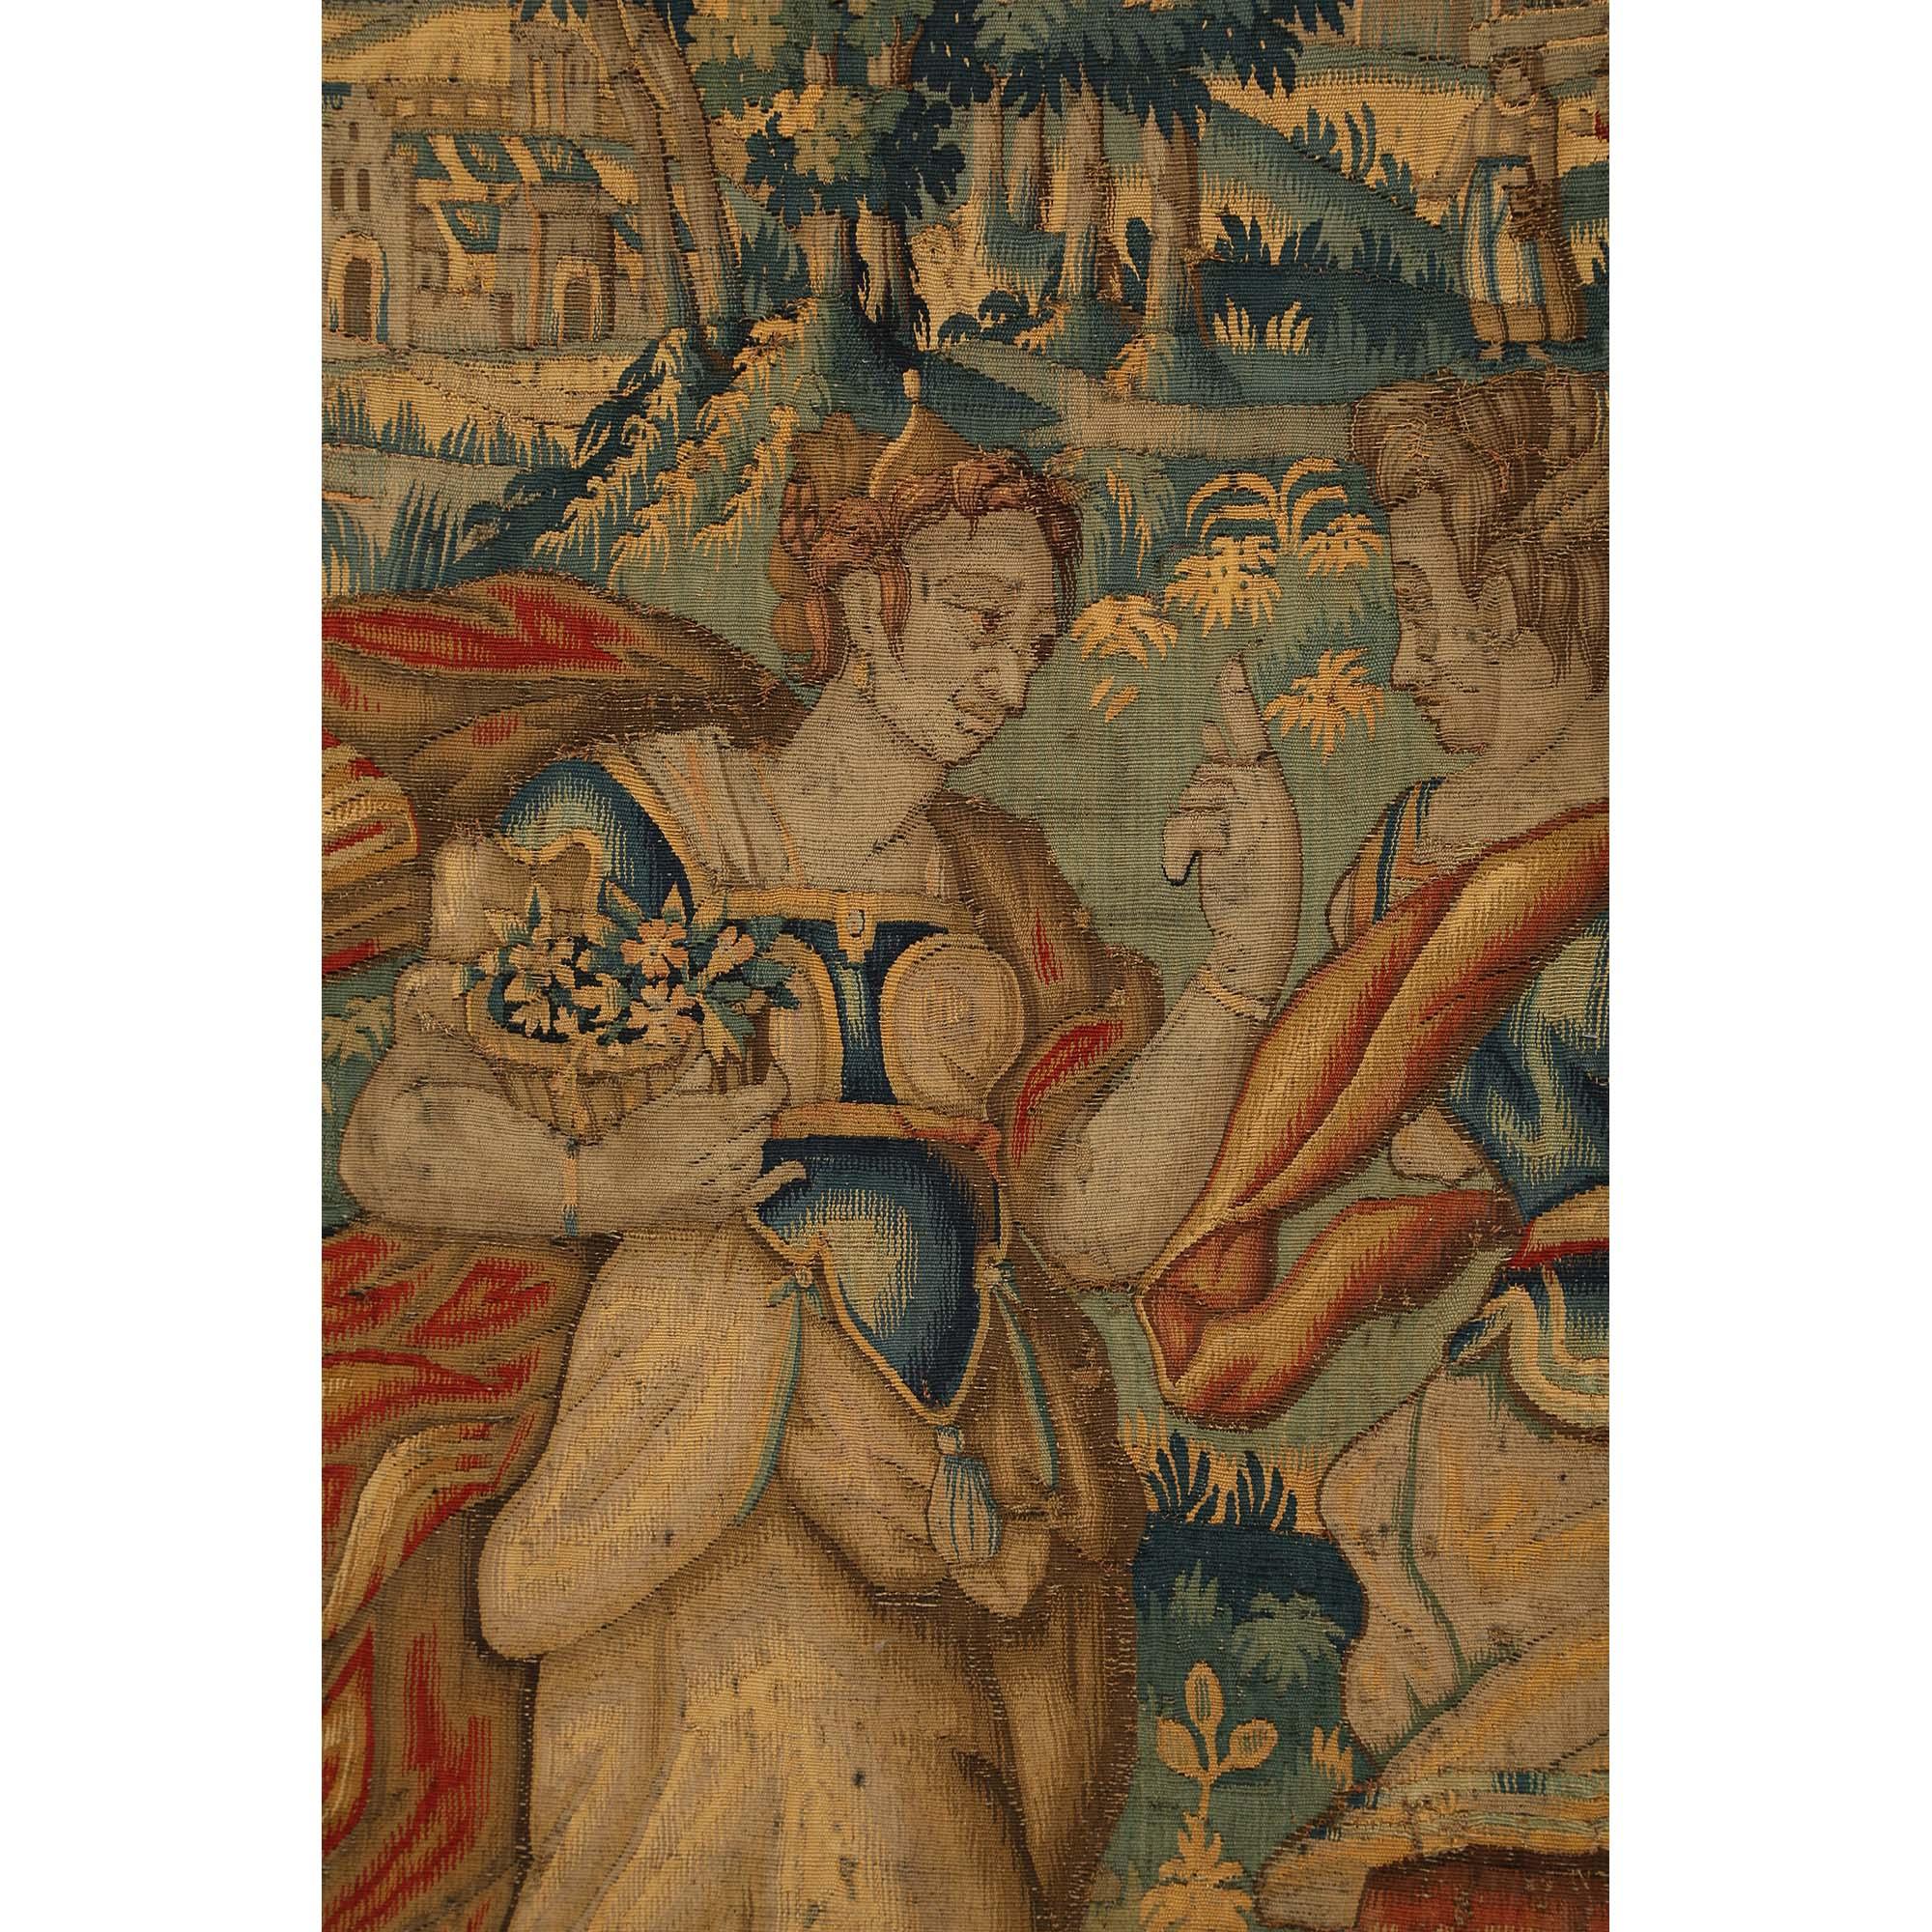 Ein exquisiter und großformatiger flämischer Wandteppich aus dem 17. Jahrhundert, eingerahmt in einen vierteiligen Paravent aus vergoldetem Holz im Stil Louis XV aus dem 19. Der Wandteppich, der Figuren in Kostümen des siebzehnten Jahrhunderts in